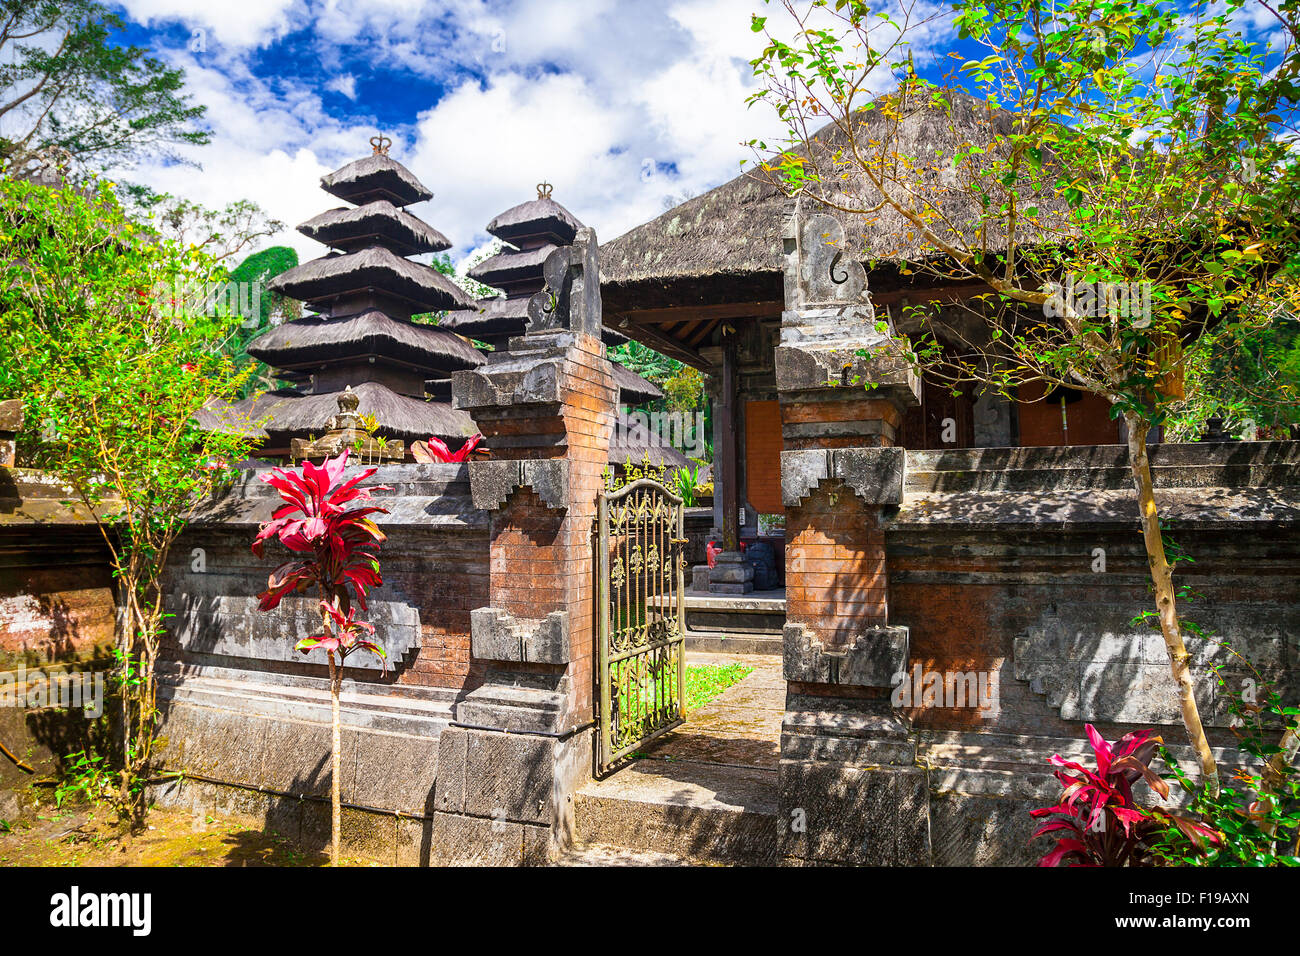 Los antiguos templos Balinesian Foto de stock